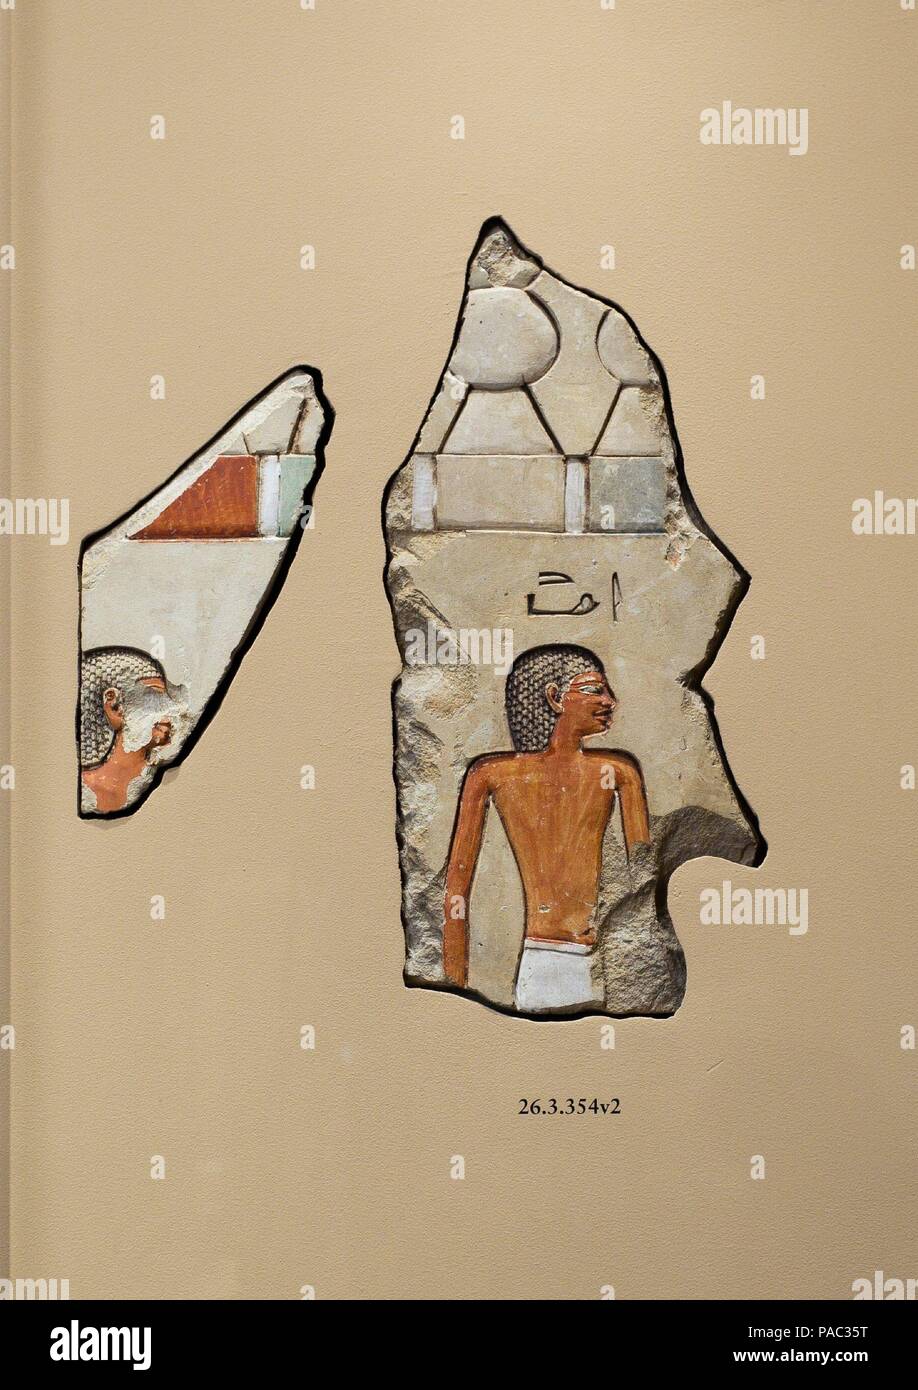 Relief, Grab von khety: zwei Männer mit geschweiften Perücken. Abmessungen: großes Fragment: H.35x W. 17 cm (13 3/4 x 6 11/16 in.). Kleine Fragment: H.18x W. 11cm (7 1/16 x 4 5/16 in.). Dynastie: Dynasty 11. Herrschaft: Herrschaft von Mentuhotep II. Datum: Ca. 2051-2000 v. Chr.. Diese beiden Fragmente der versenkten Relief die oberen Teile von zwei männlichen Figuren tragen curly Perücken und bewegliches Recht, möglicherweise Teil einer Prozession zu Viewer zu erhalten. Über dem Kopf der Figur ganz rechts sind Hieroglyphen seinen Namen geben wie Imi. An der Spitze dieser Szene ist ein buntes Band von einem <i> kheker</i> - Frieze, eine abstrakte Darstellung gekrönt Stockfoto